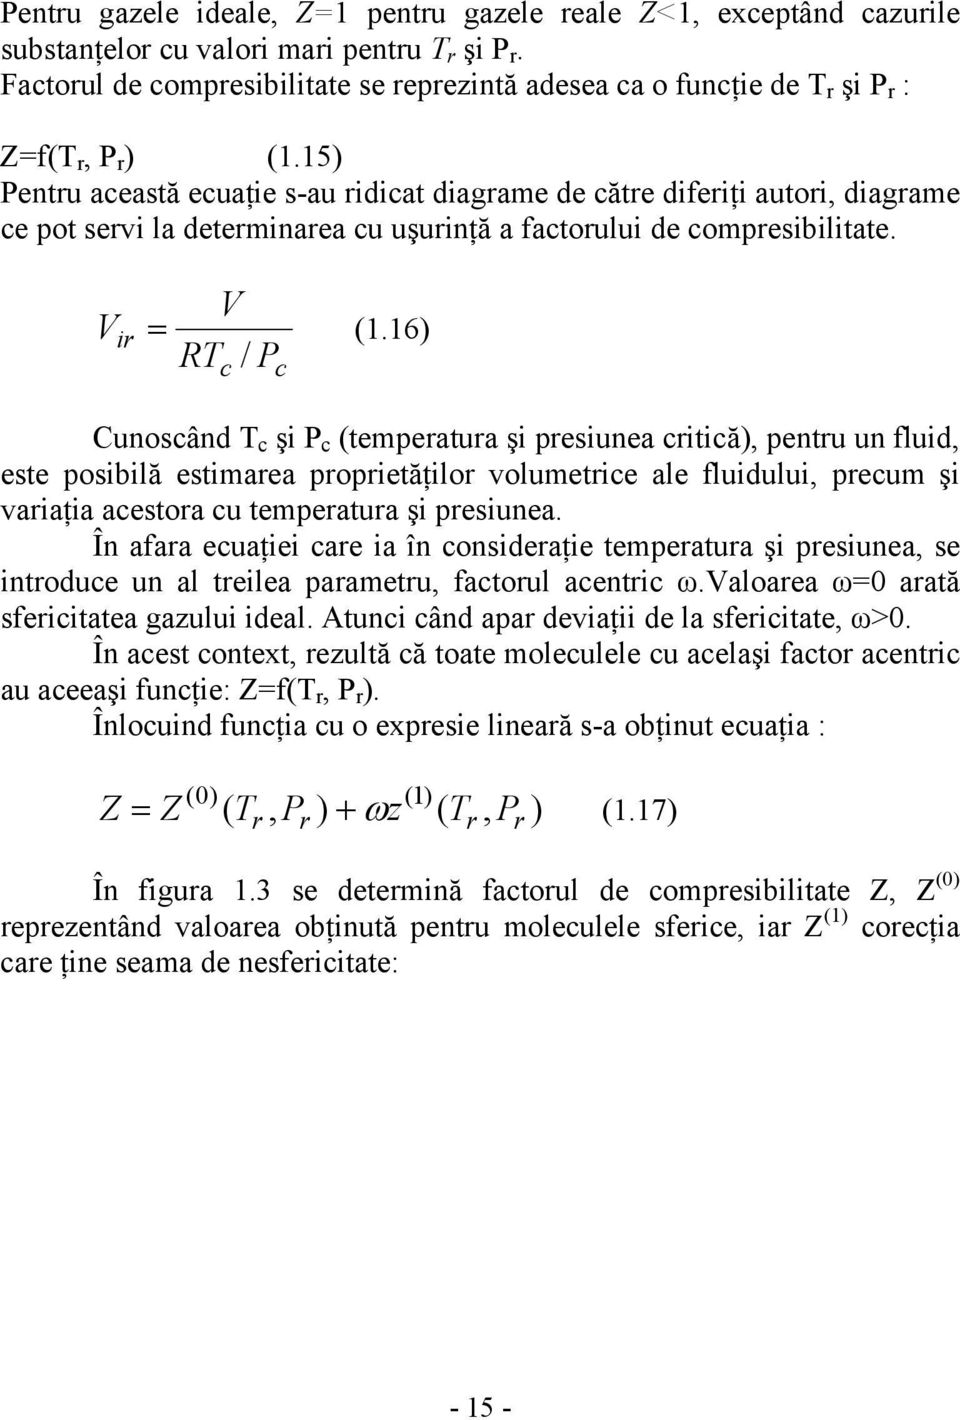 15) Pentru această ecuaţie s-au ridicat diagrame de către diferiţi autori, diagrame ce pot servi la determinarea cu uşurinţă a factorului de compresibilitate. V ir V RT / P = (1.